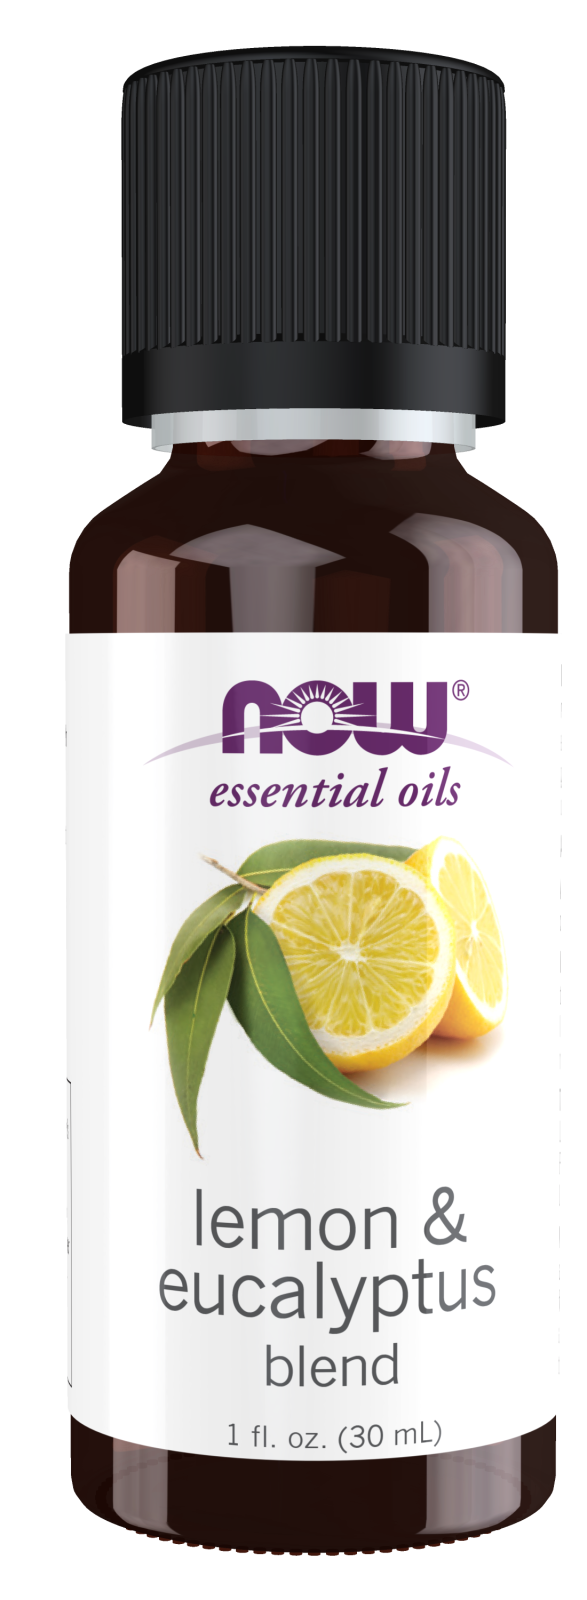 Lemon & Eucalyptus Oil Blend - 1 fl. oz. Bottle Front